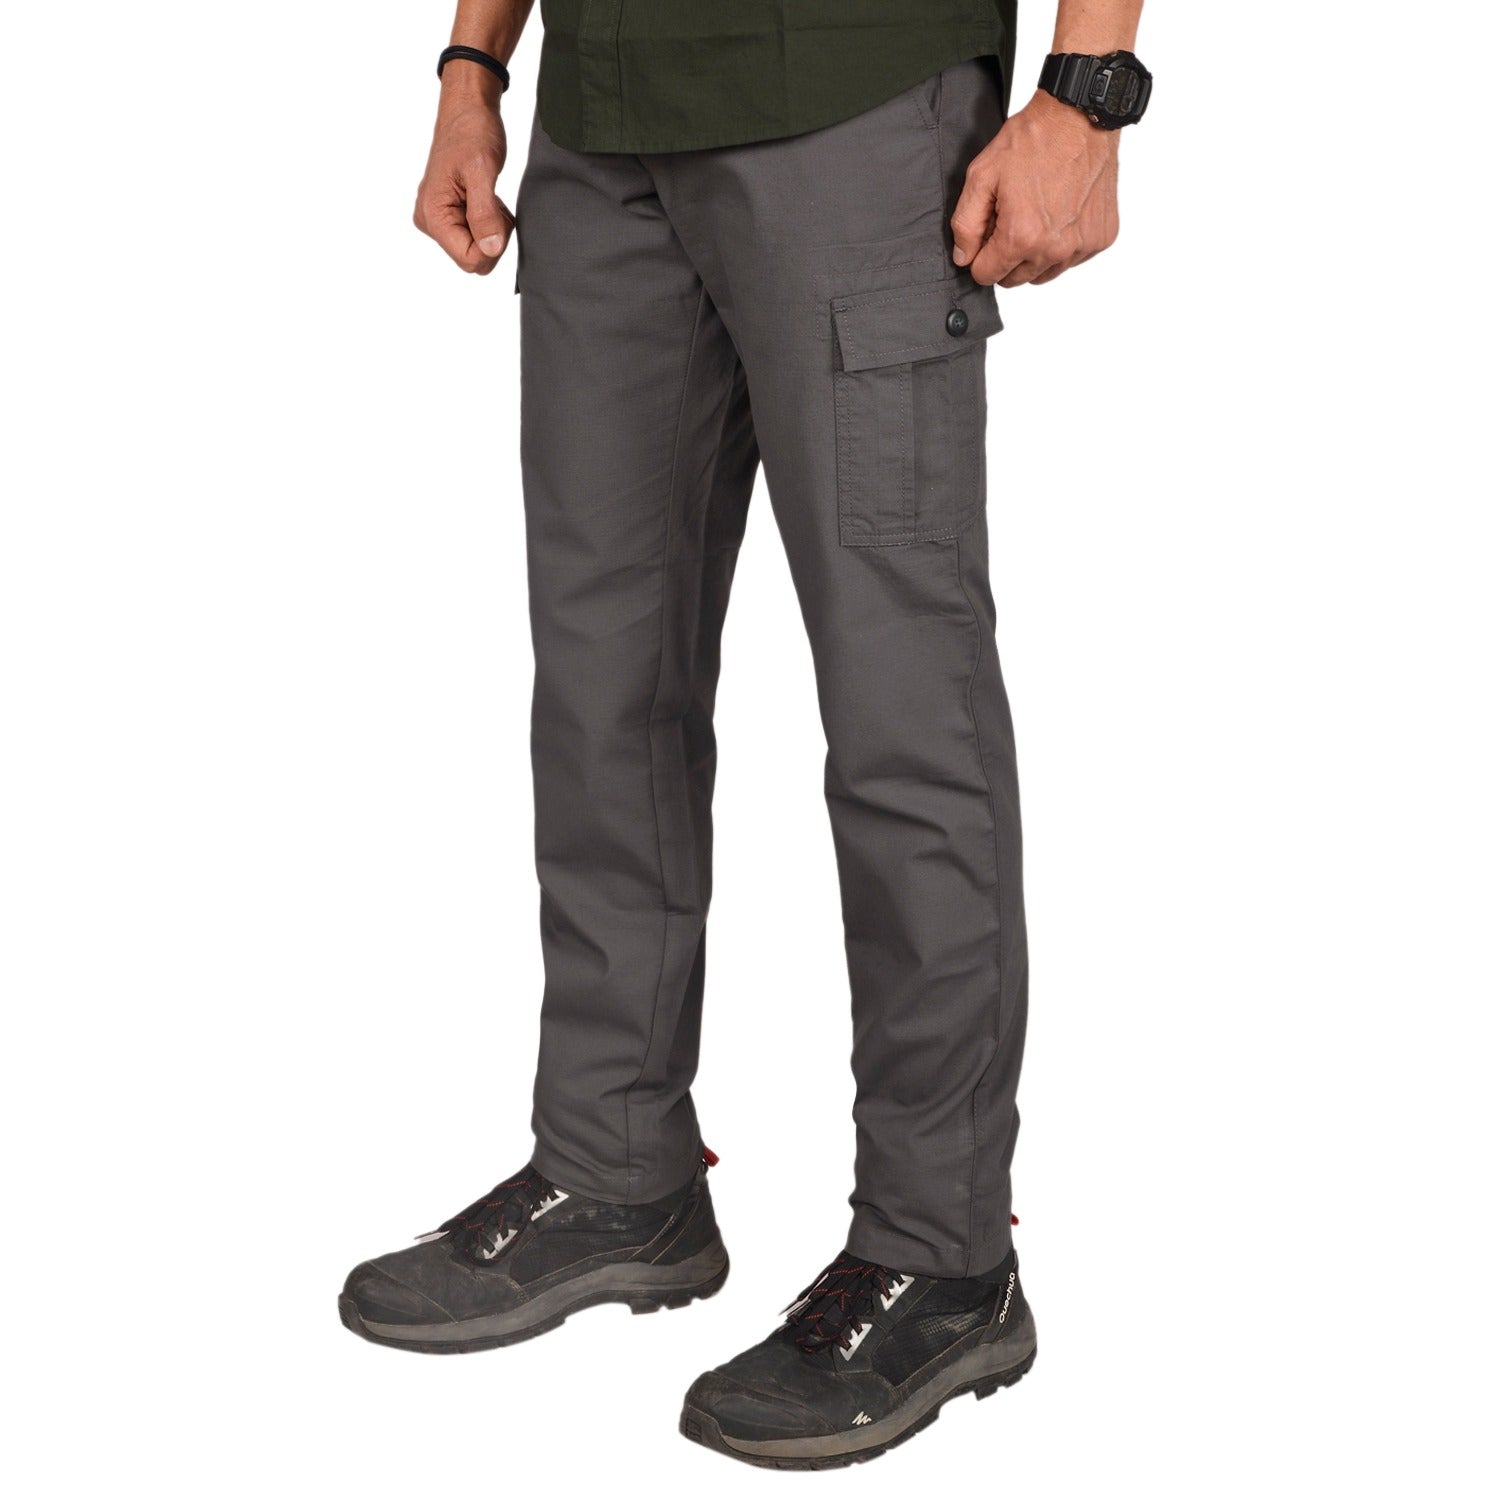 Buy Gokyo Corbett Outdoor Cargo Pants | Trekking & Hiking Pants at Gokyo Outdoor Clothing & Gear